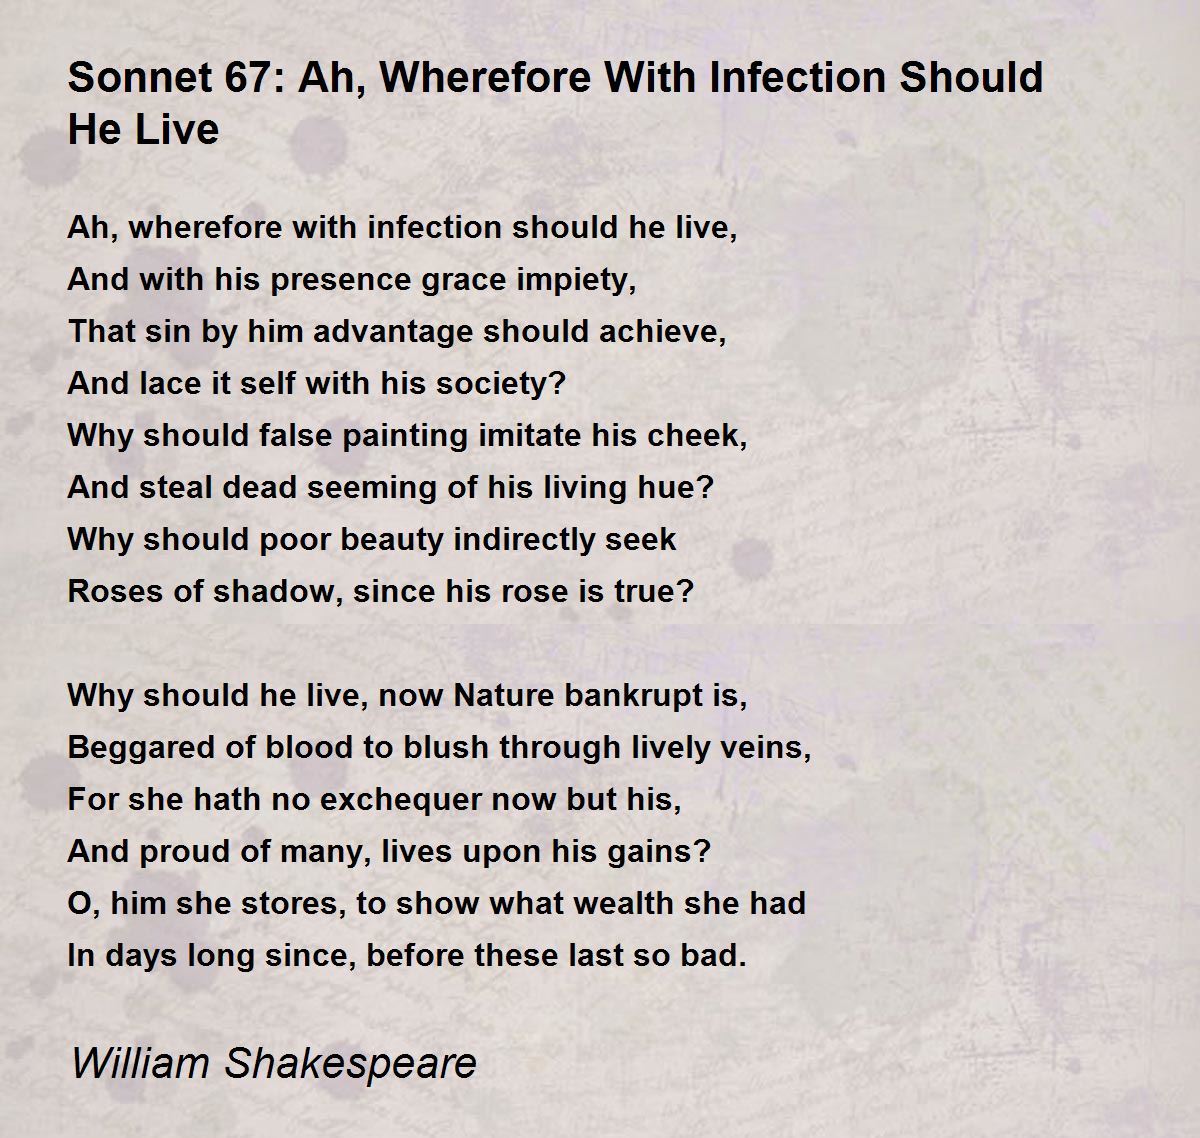 sonnet 67